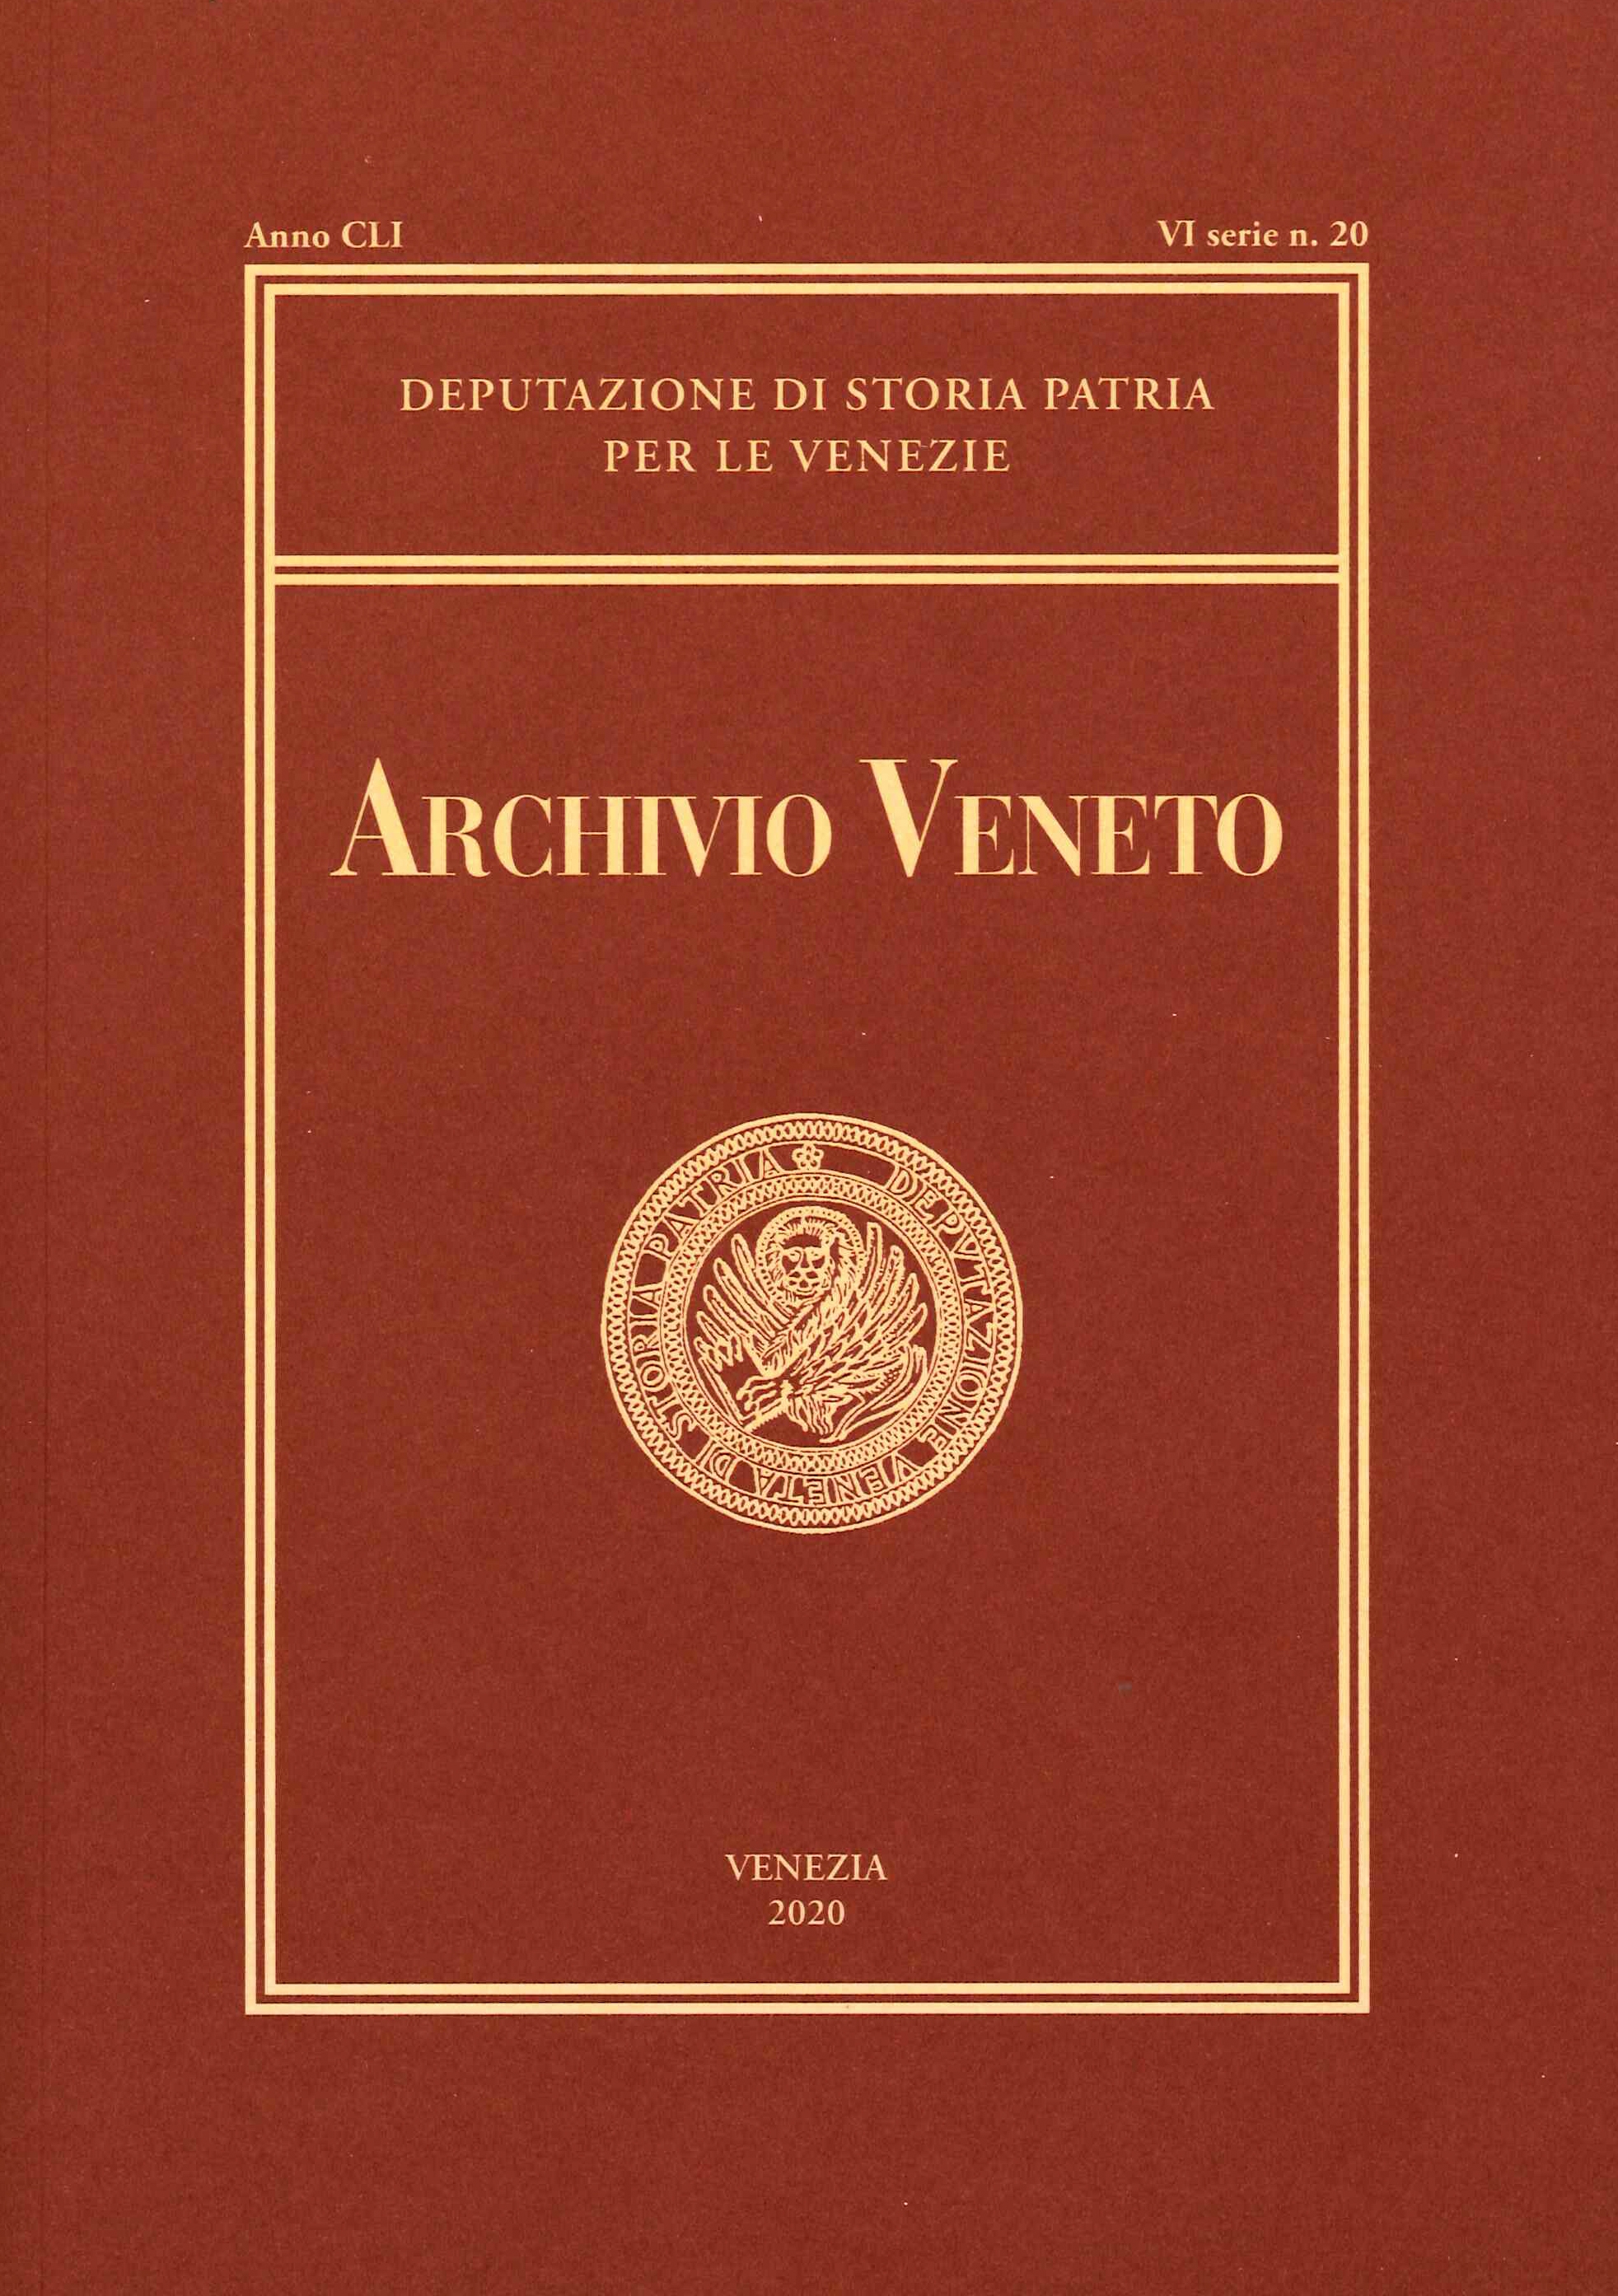 Archivio Veneto. Sesta serie. Anno Anno CLI. Vol. 20. 2020. - Photo 1/1